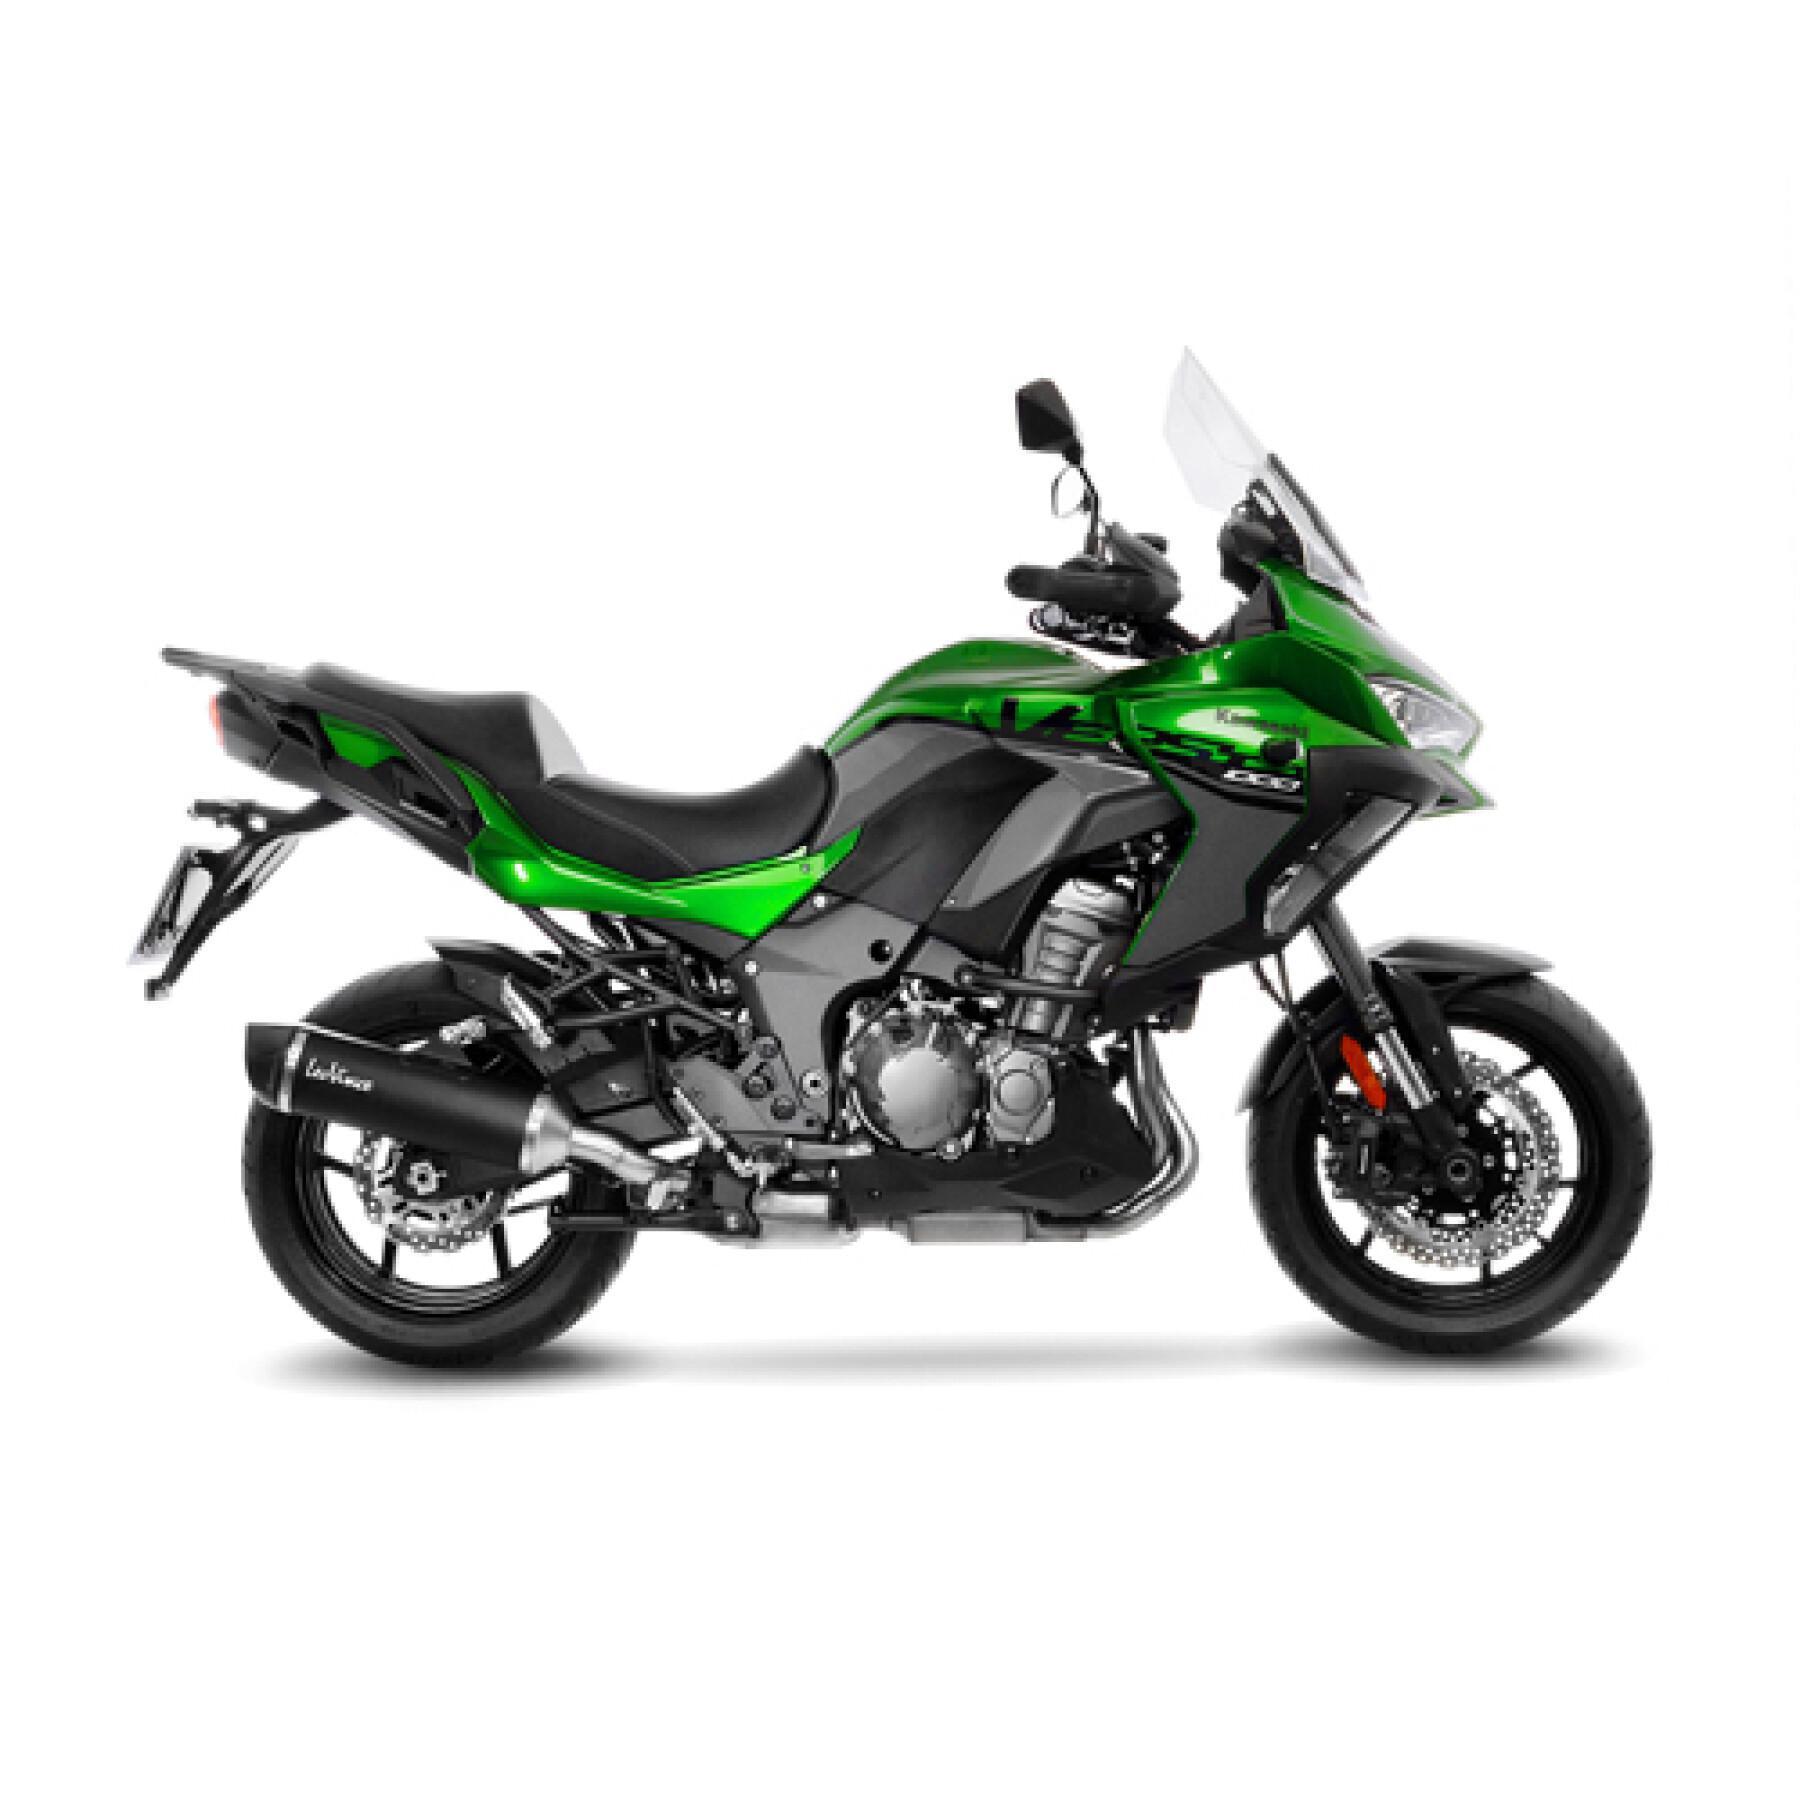 wydech motocyklowy Leovince Nero Kawasaki Versys 1000 2019-2021